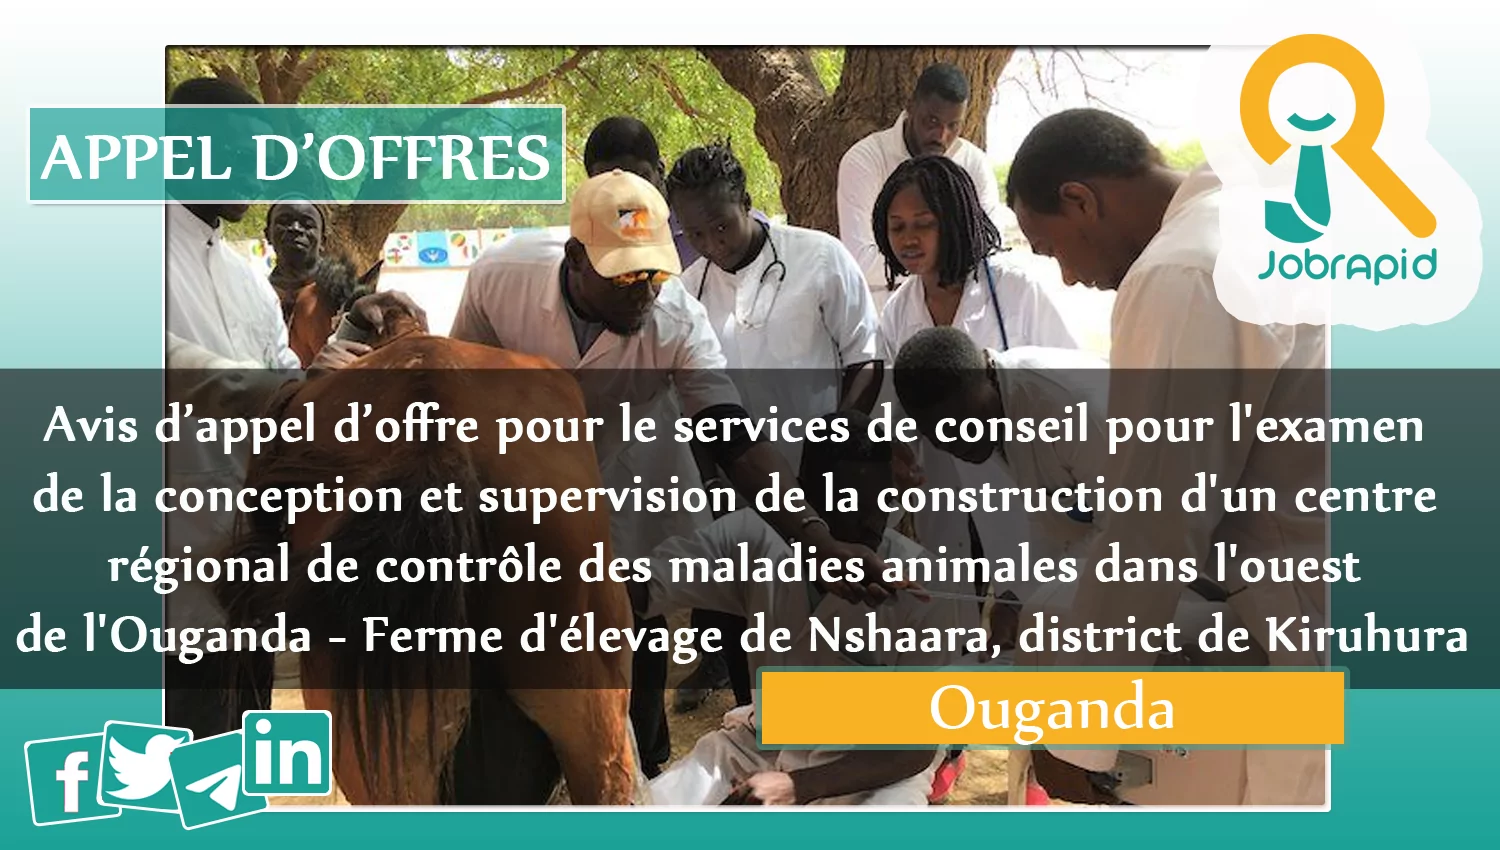 Avis d’appel d’offre pour le services de conseil pour l’examen de la conception et supervision de la construction d’un centre régional de contrôle des maladies animales dans l’ouest de l’Ouganda – Ferme d’élevage de Nshaara, district de Kiruhura, Ouganda